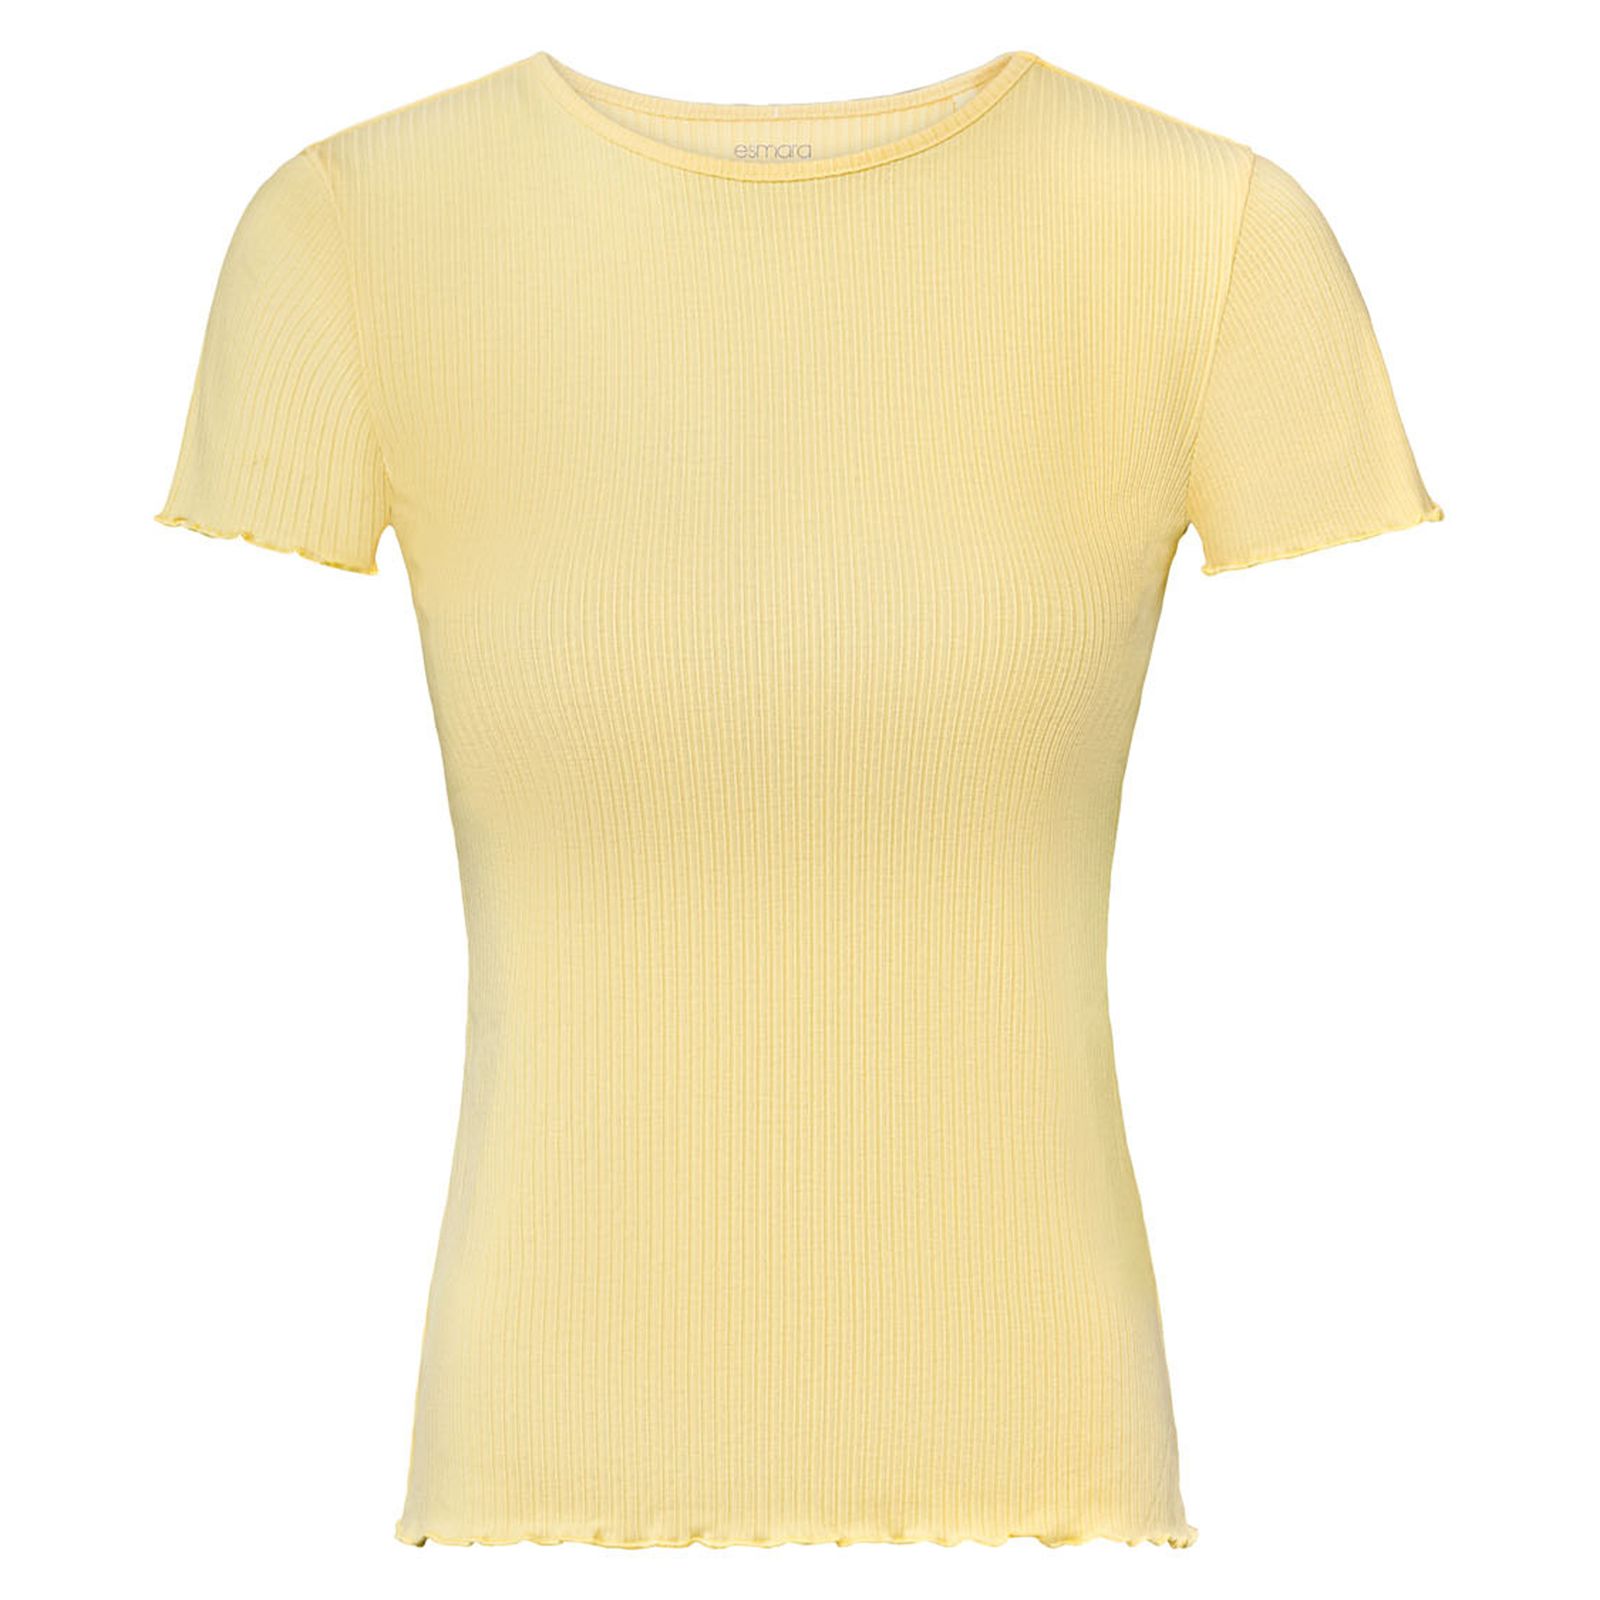 تی شرت آستین کوتاه زنانه اسمارا مدل کبریتی رنگ زرد -  - 1